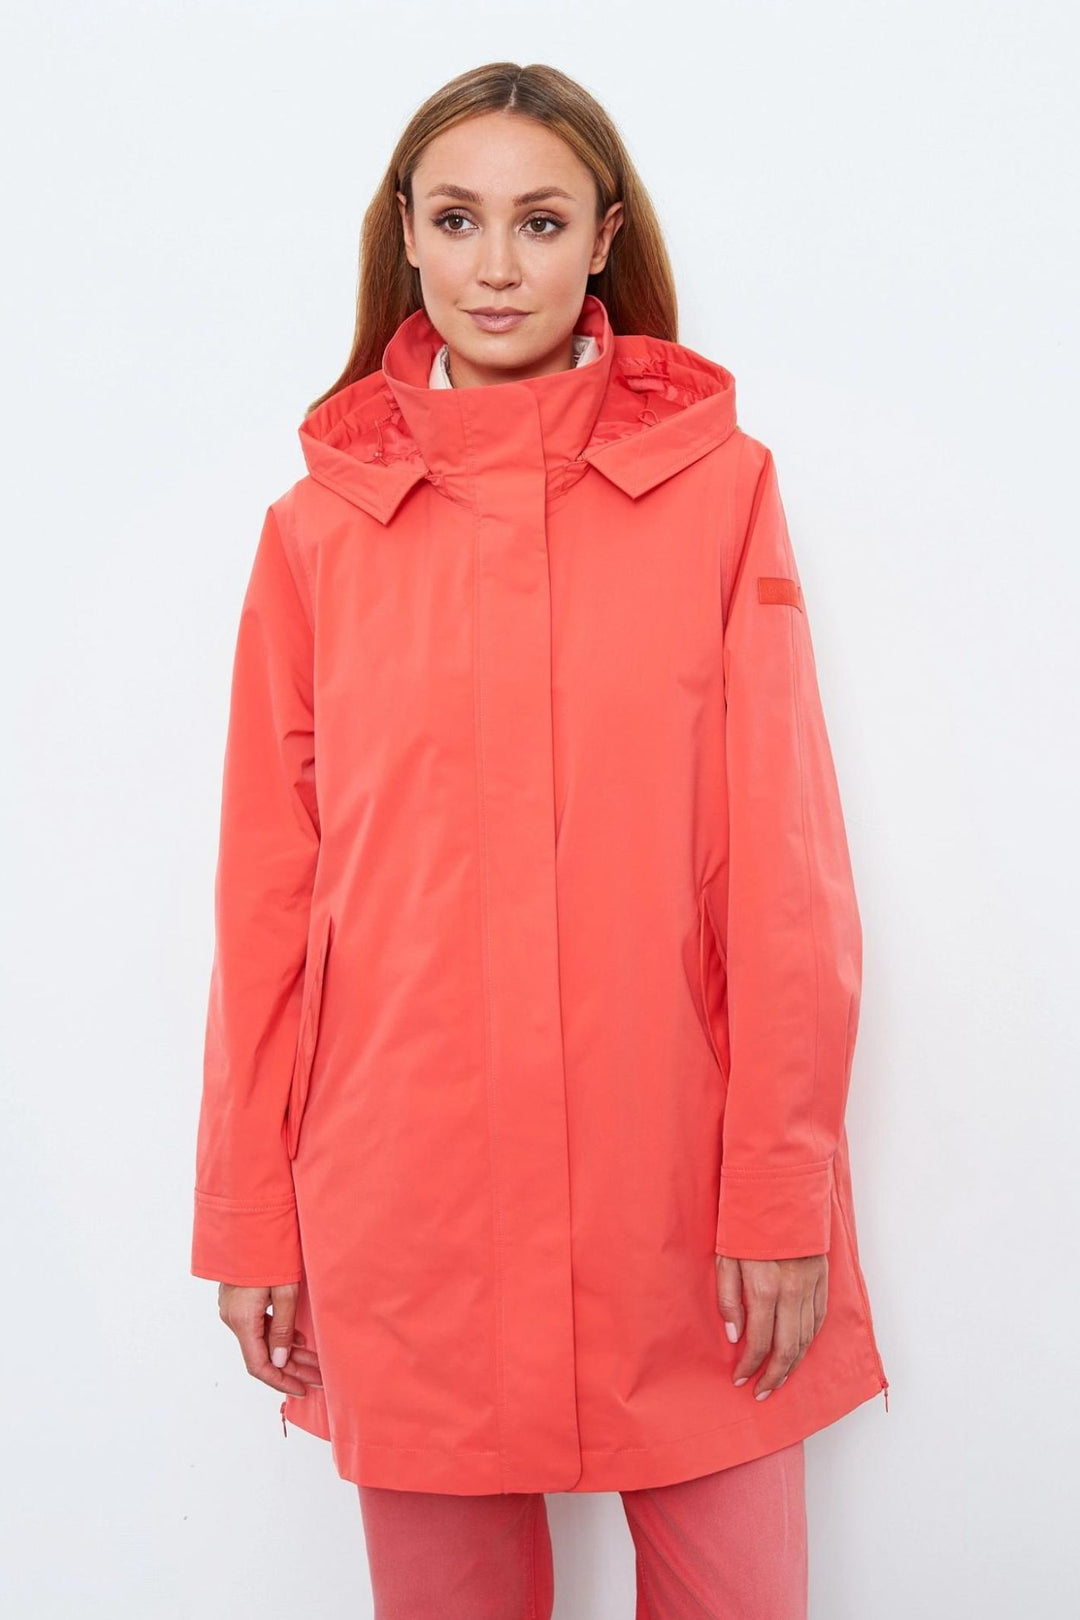 Gerry Weber 350203 60394 Hibiscus Orange Waterproof Rain Coat